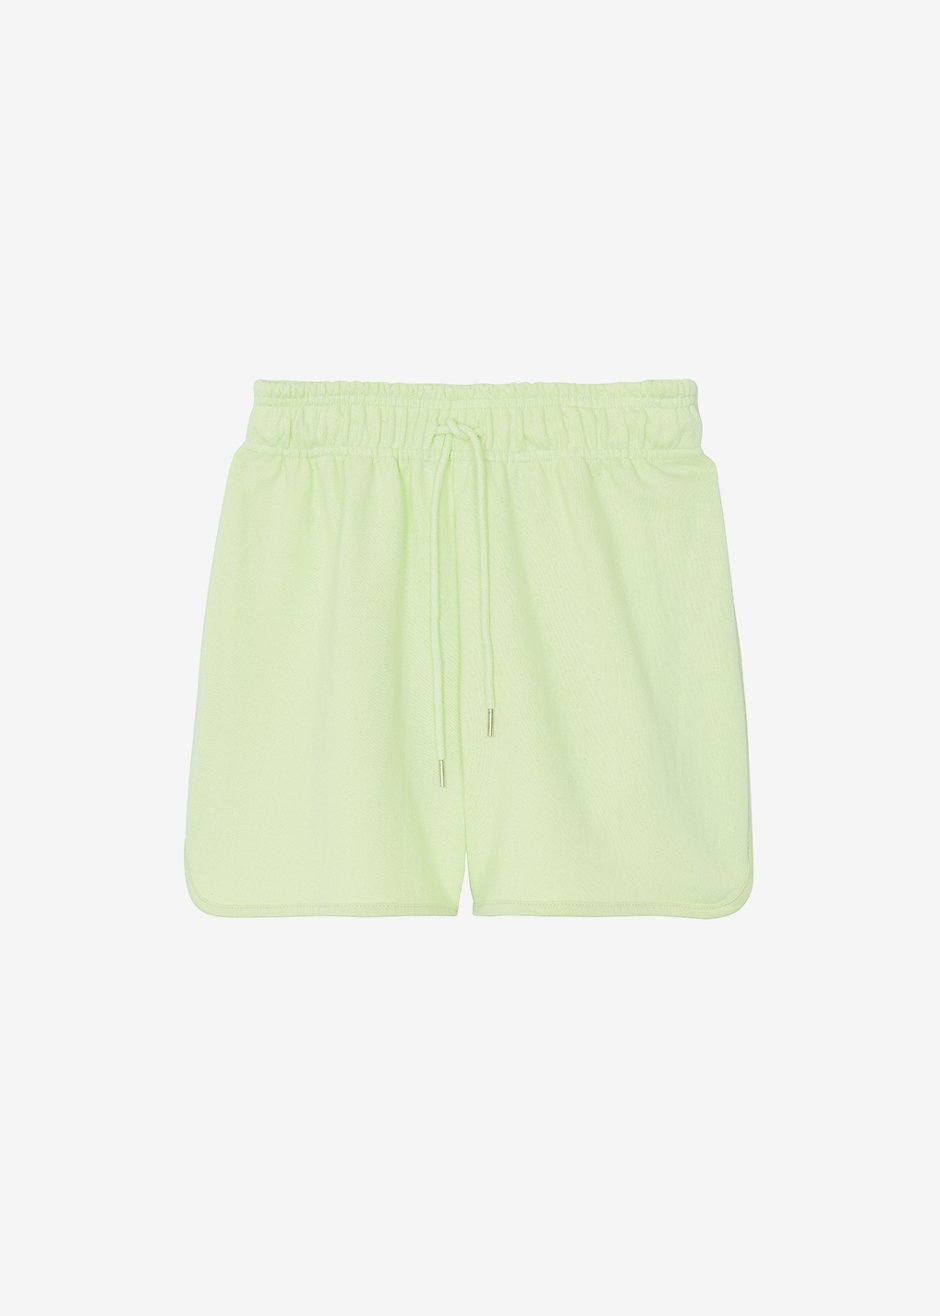 Raina Gym Shorts - Lime - 7